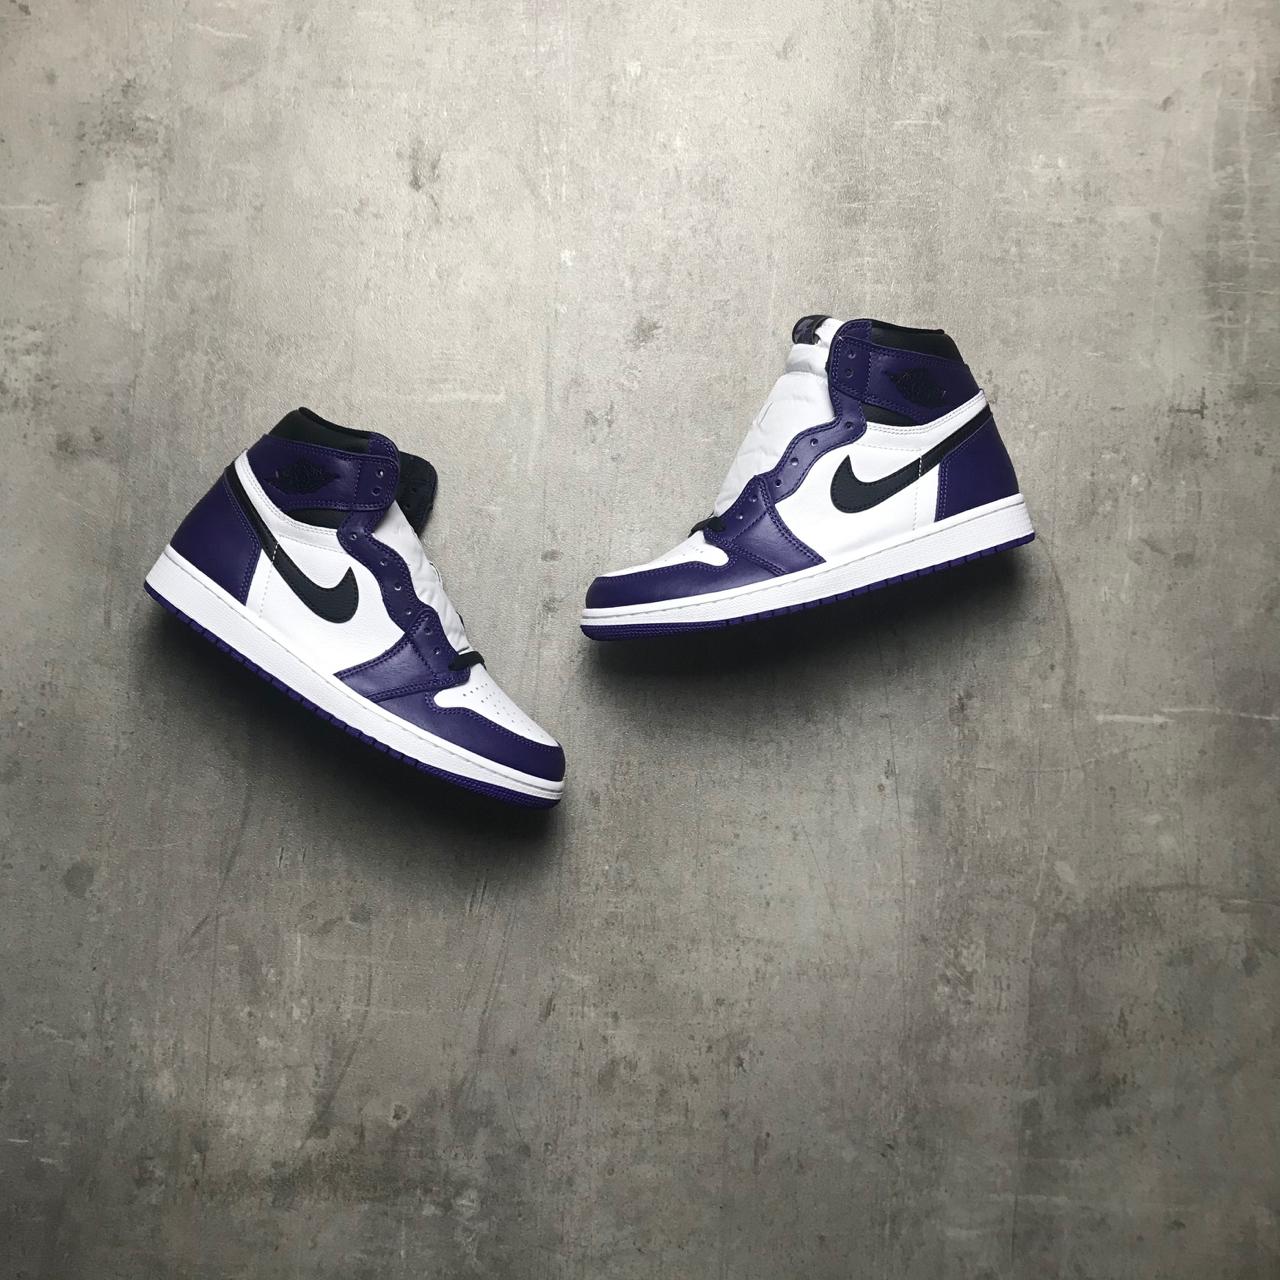 død længst trone Nike Jordan 1 Retro High Court Purple White Size US... - Depop